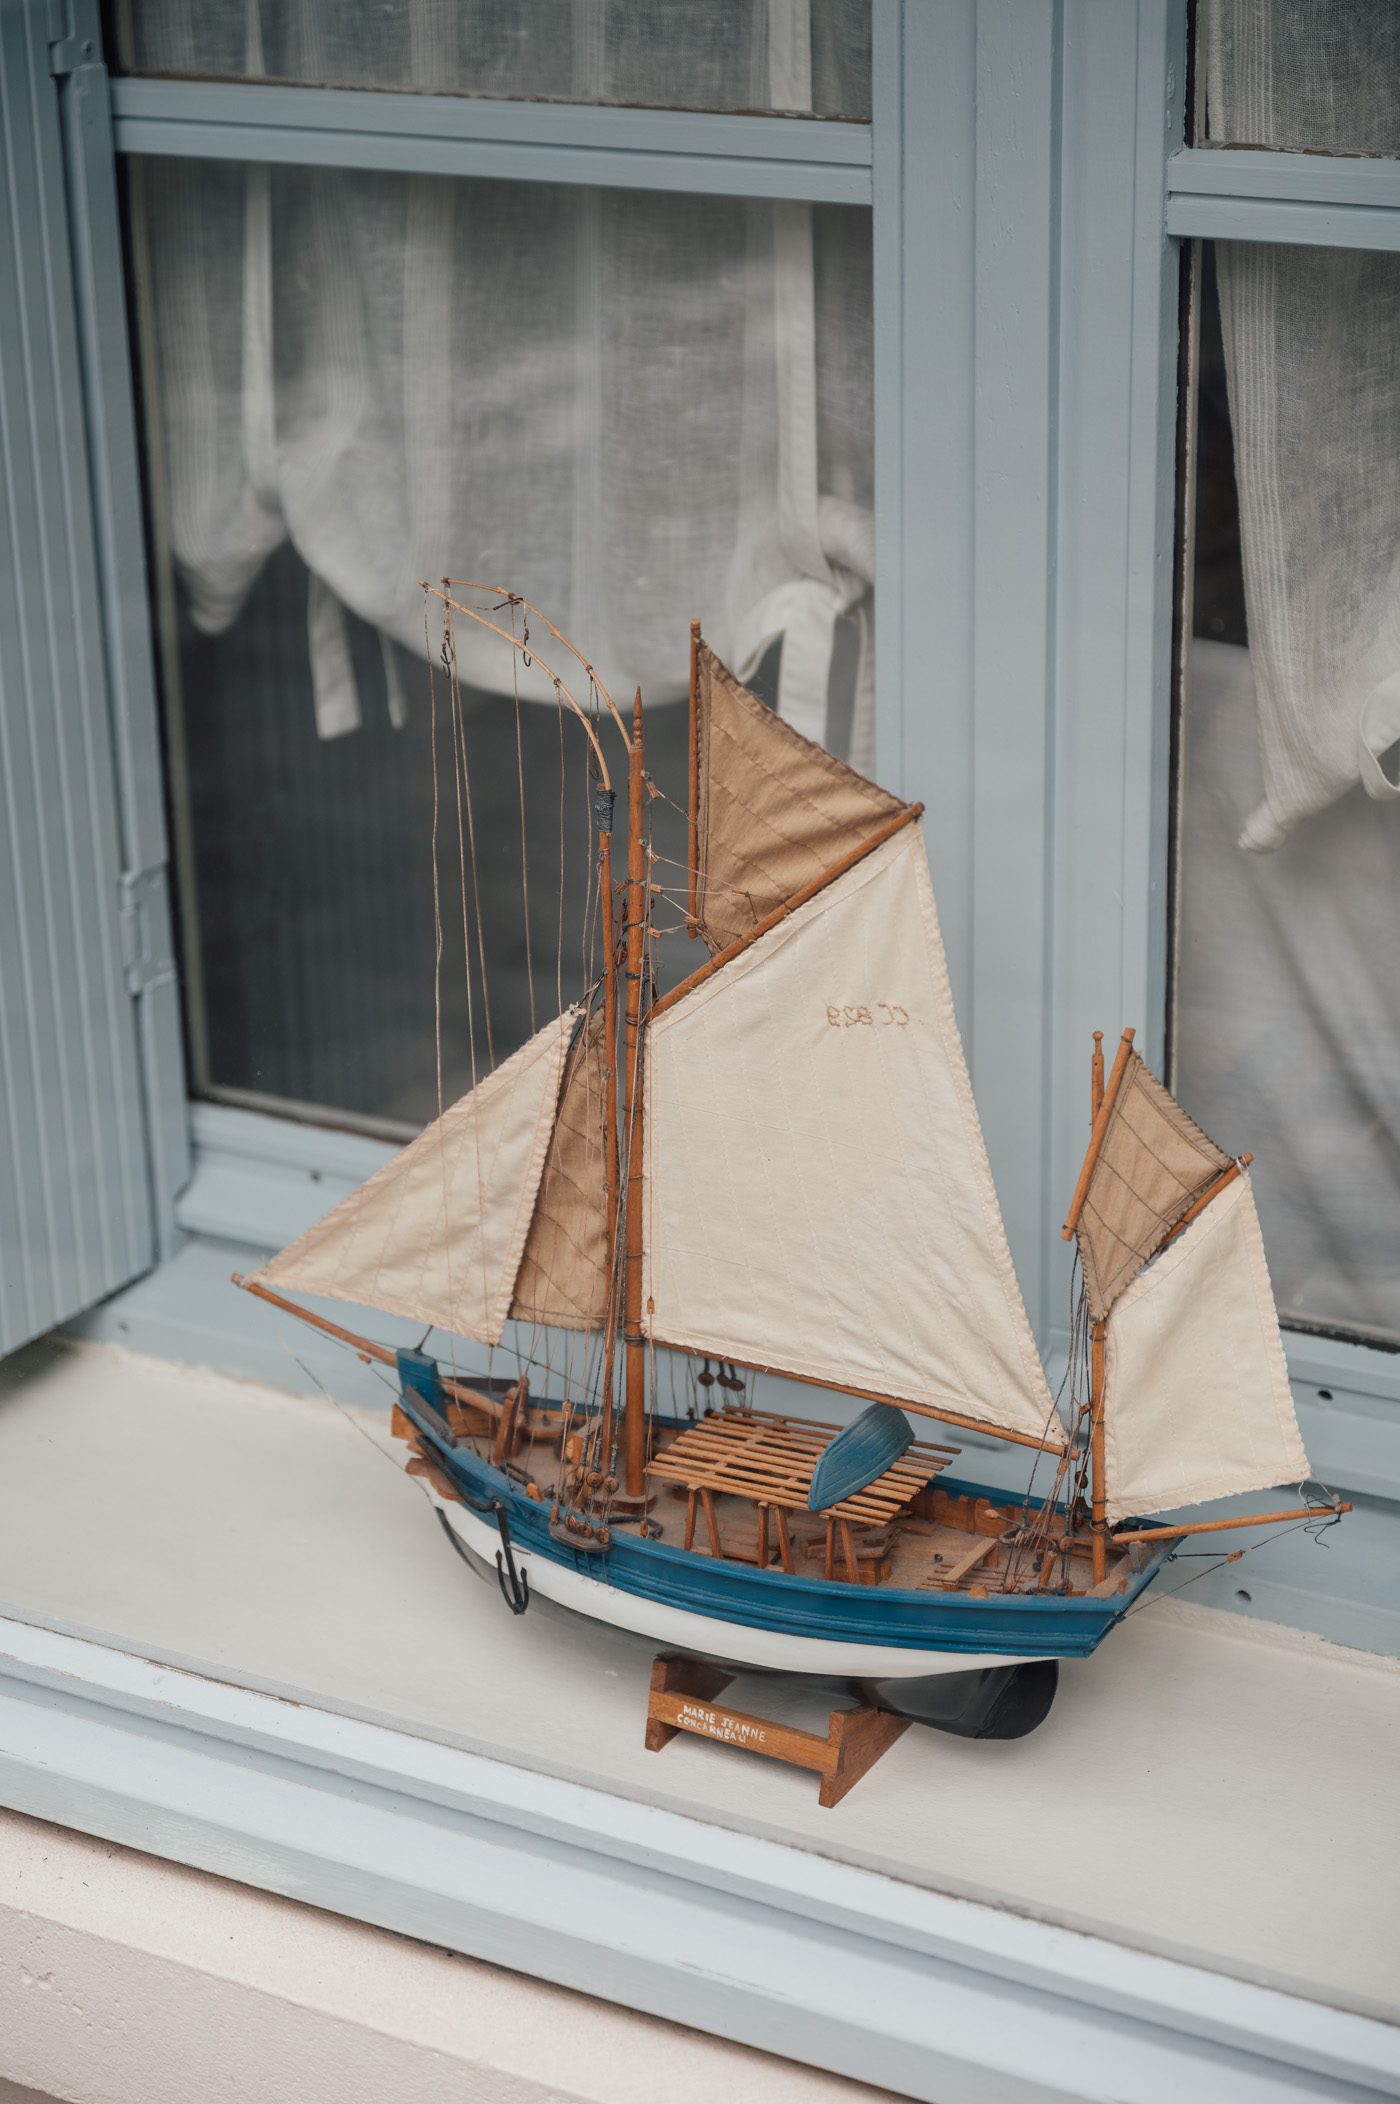 Boat model in a window in Honfleur Normandy